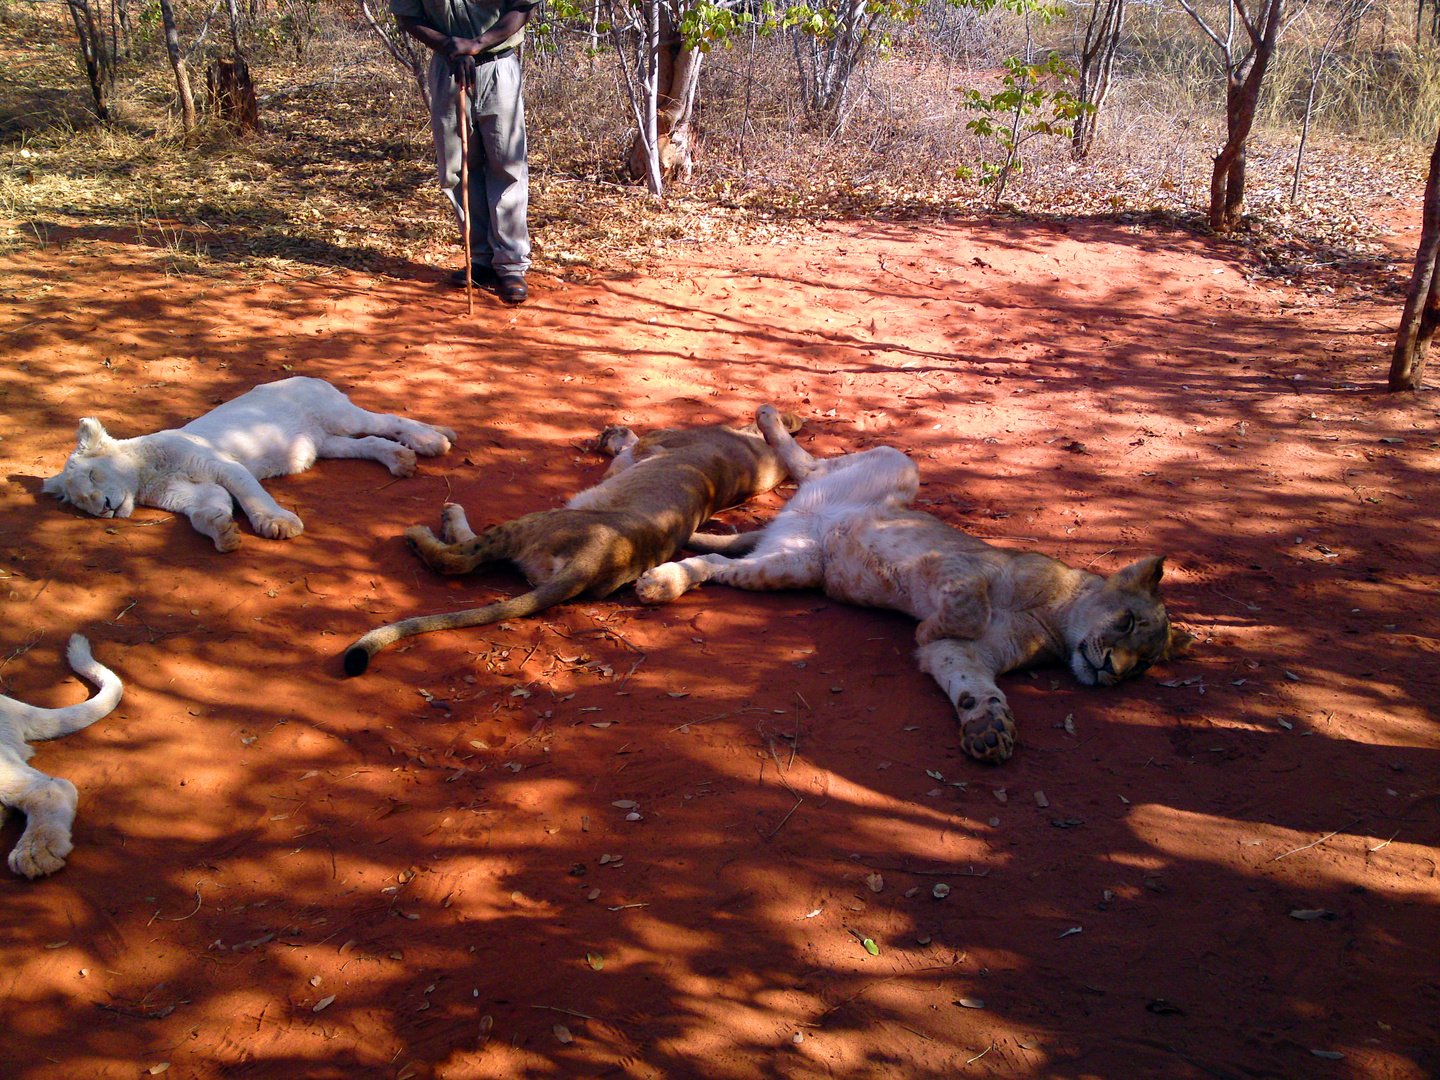 Löwen in Sambia, alle sehr müde.....